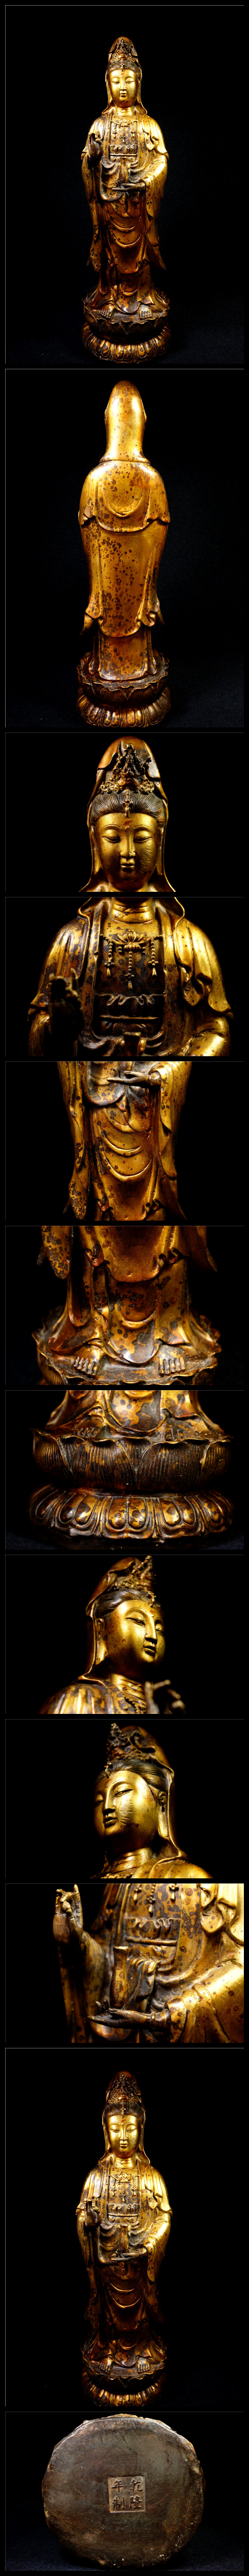 流行り金銅細工 仏教 大迫力観音菩薩造像高彫 乾隆年製 鎮宅 開運財運置物 極上質 仏像